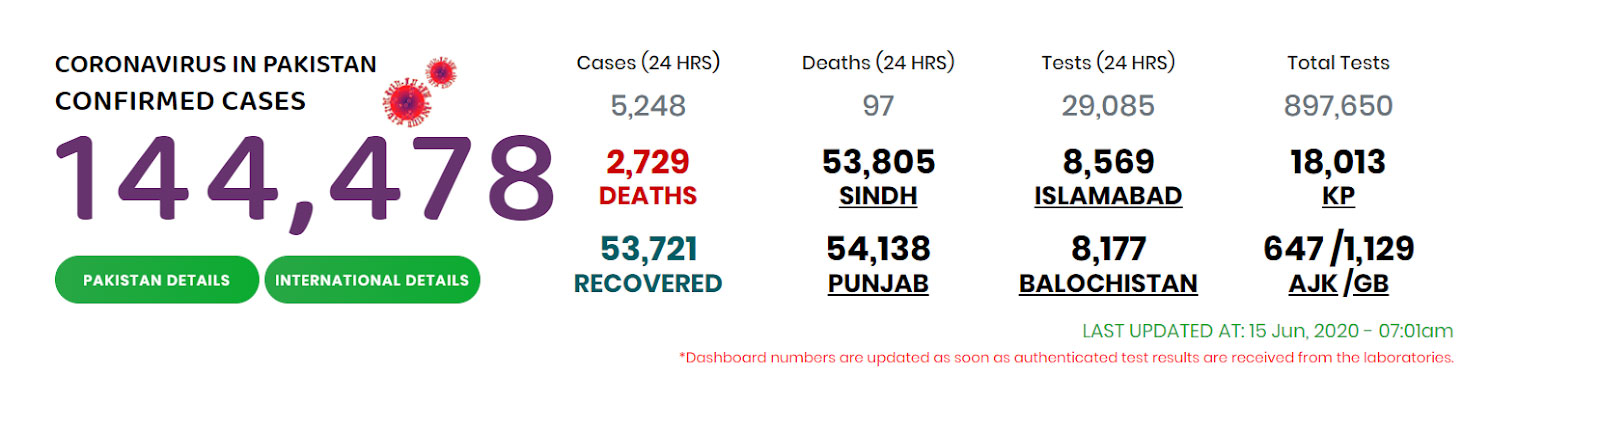 situation of coronavirus in pakistan